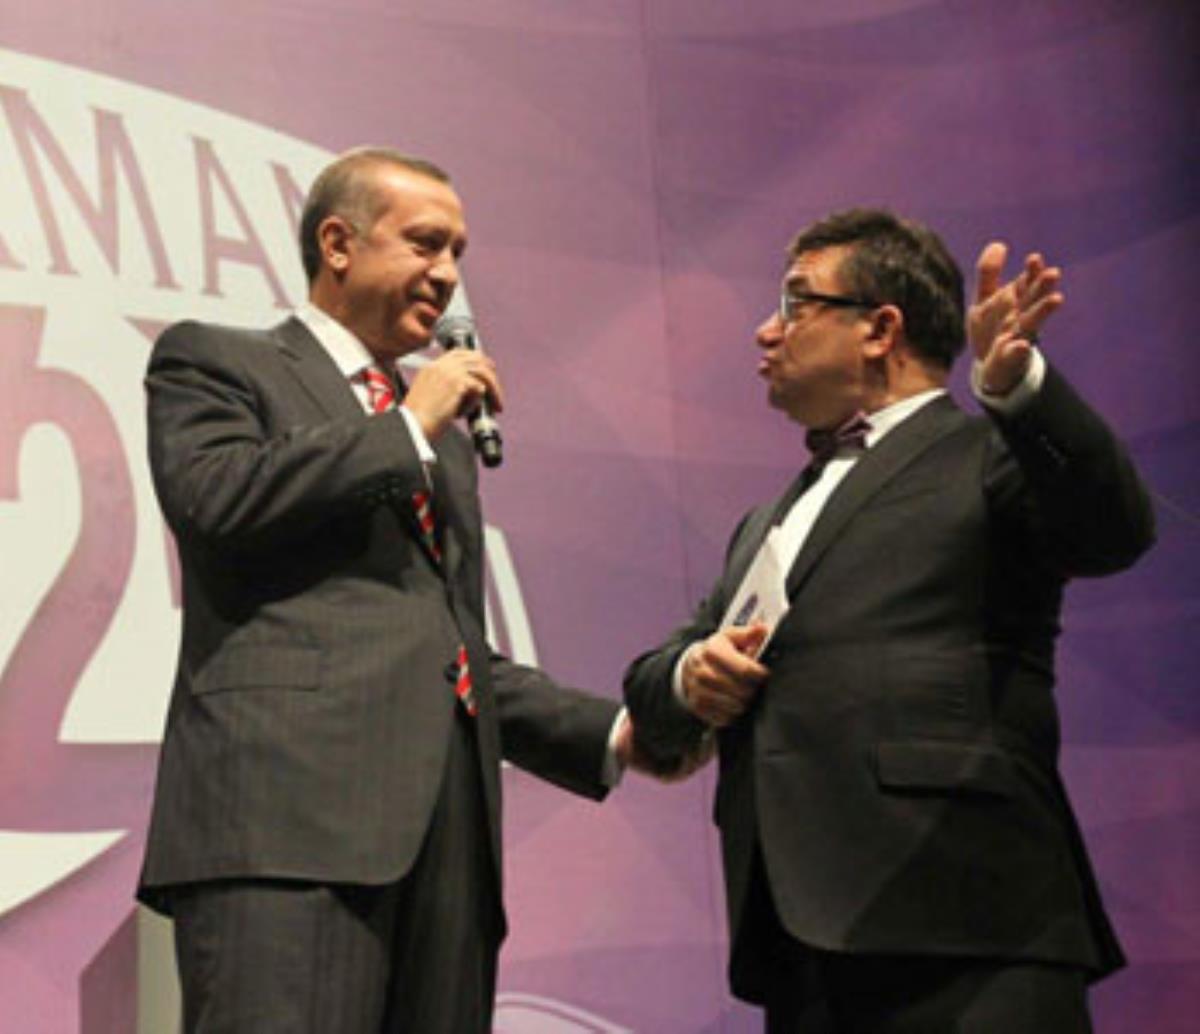 basbakan-erdogan-ve-kadir-copdemir-in-diyalogu-3305857-7147-amp.jpg